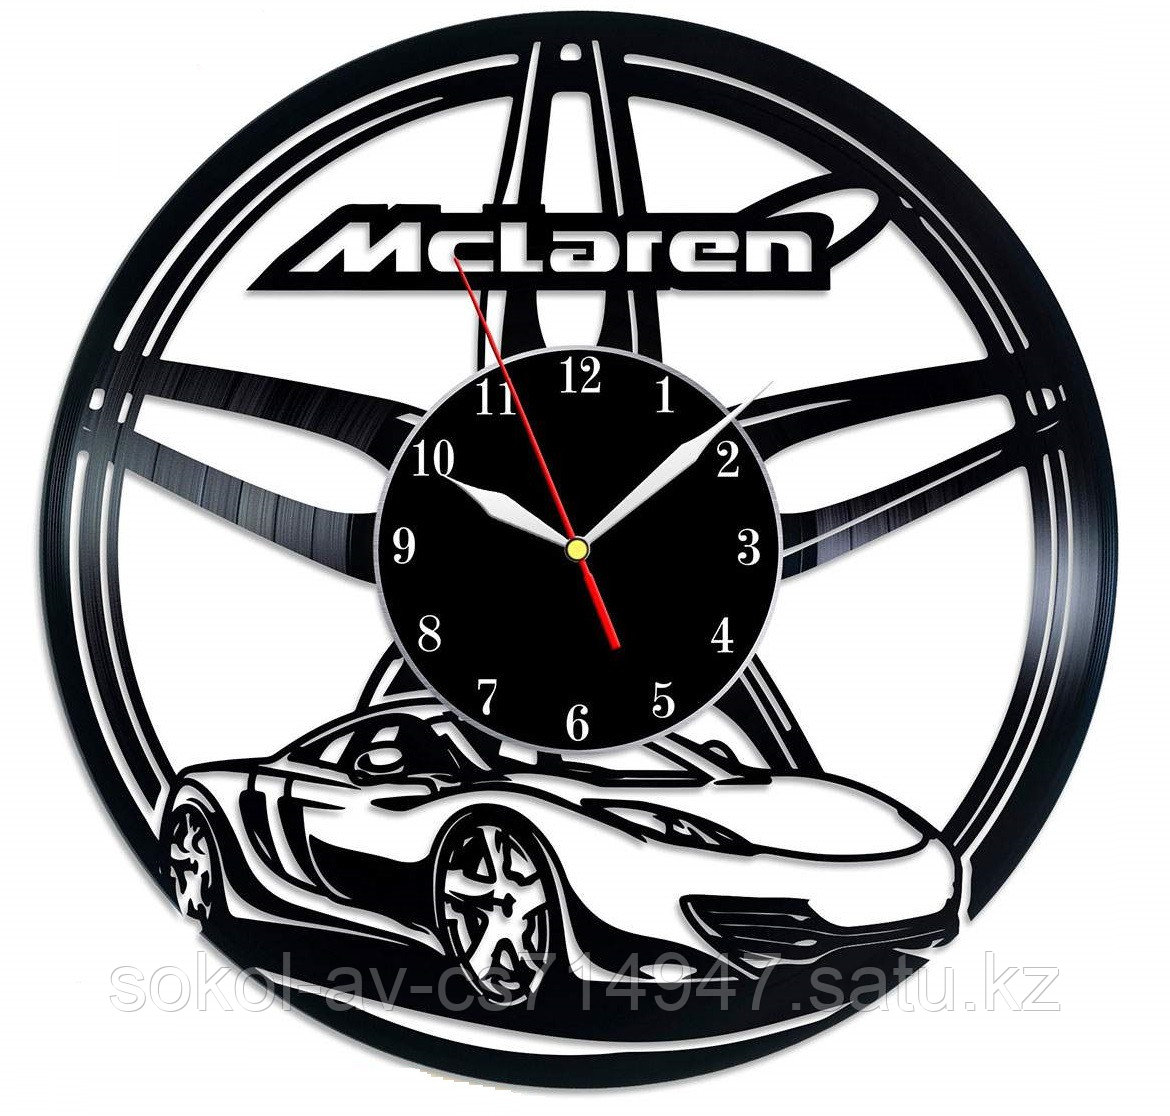 Настенные часы из пластинки, авто McLaren Макларен, подарок фанатам, любителям, 0395